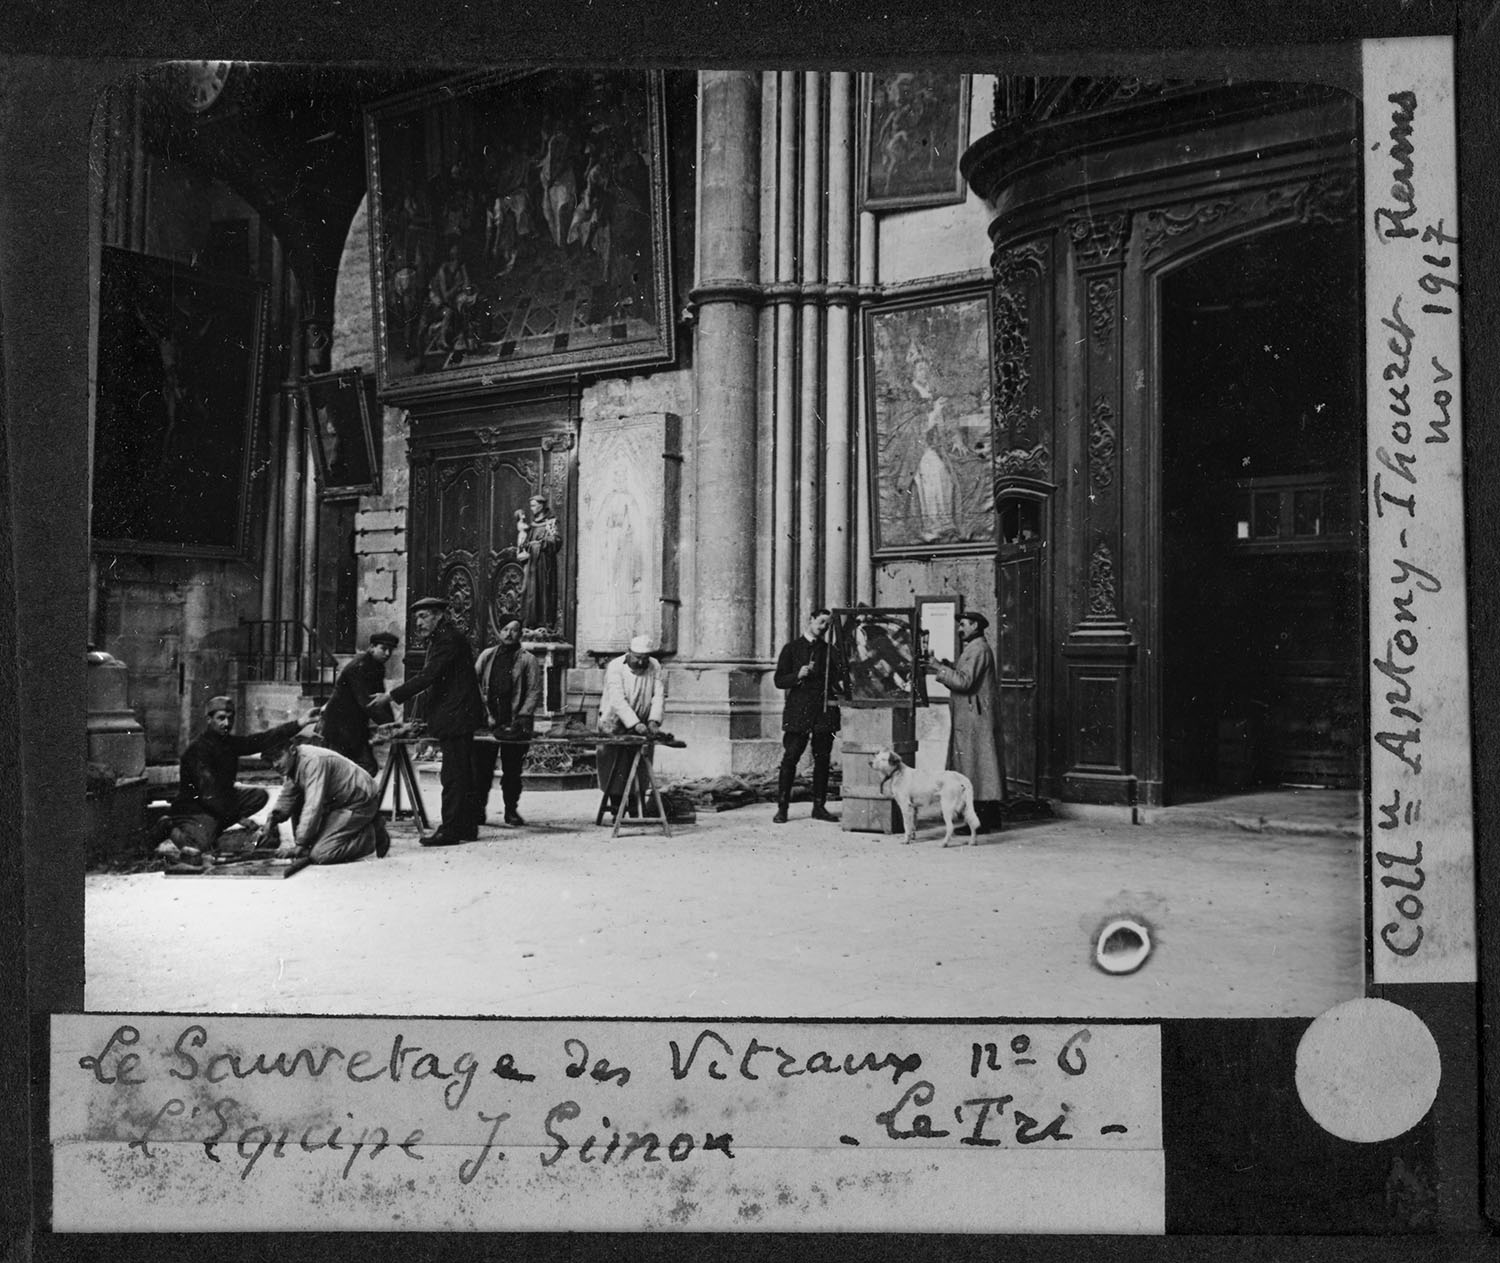 Le sauvetage des vitraux par Ateliers Marcq, novembre 1917. - BM Reims, PDV Sainsaulieu 25